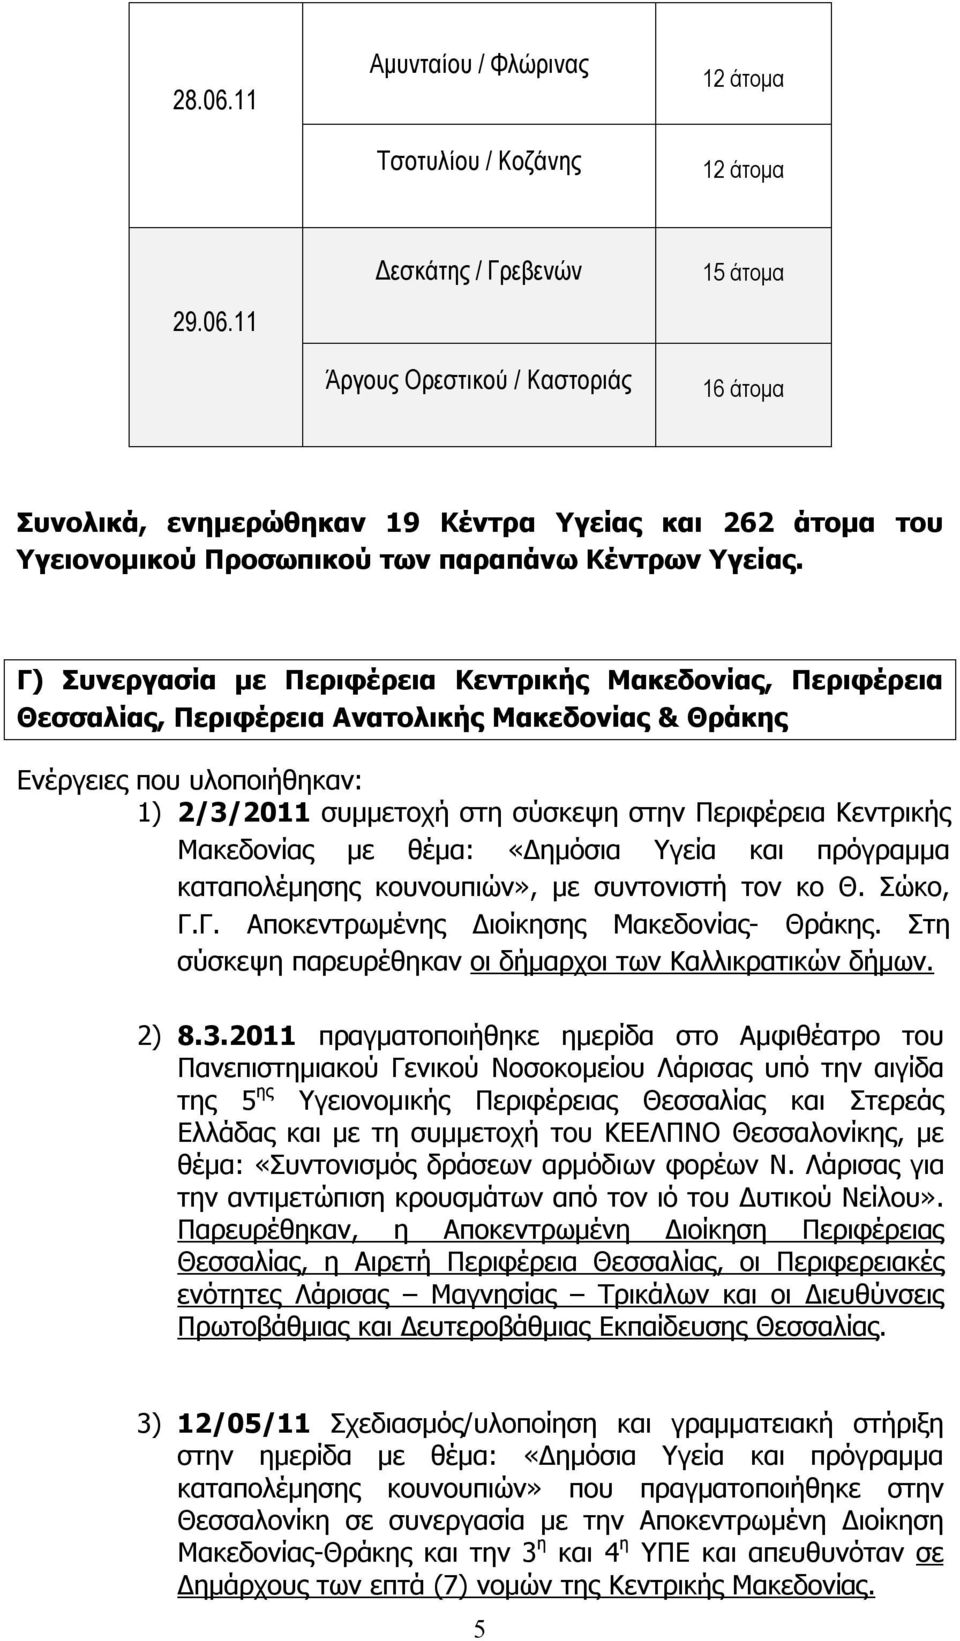 Κεντρικής Μακεδονίας με θέμα: «Δημόσια Υγεία και πρόγραμμα καταπολέμησης κουνουπιών», με συντονιστή τον κο Θ. Σώκο, Γ.Γ. Αποκεντρωμένης Διοίκησης Μακεδονίας- Θράκης.